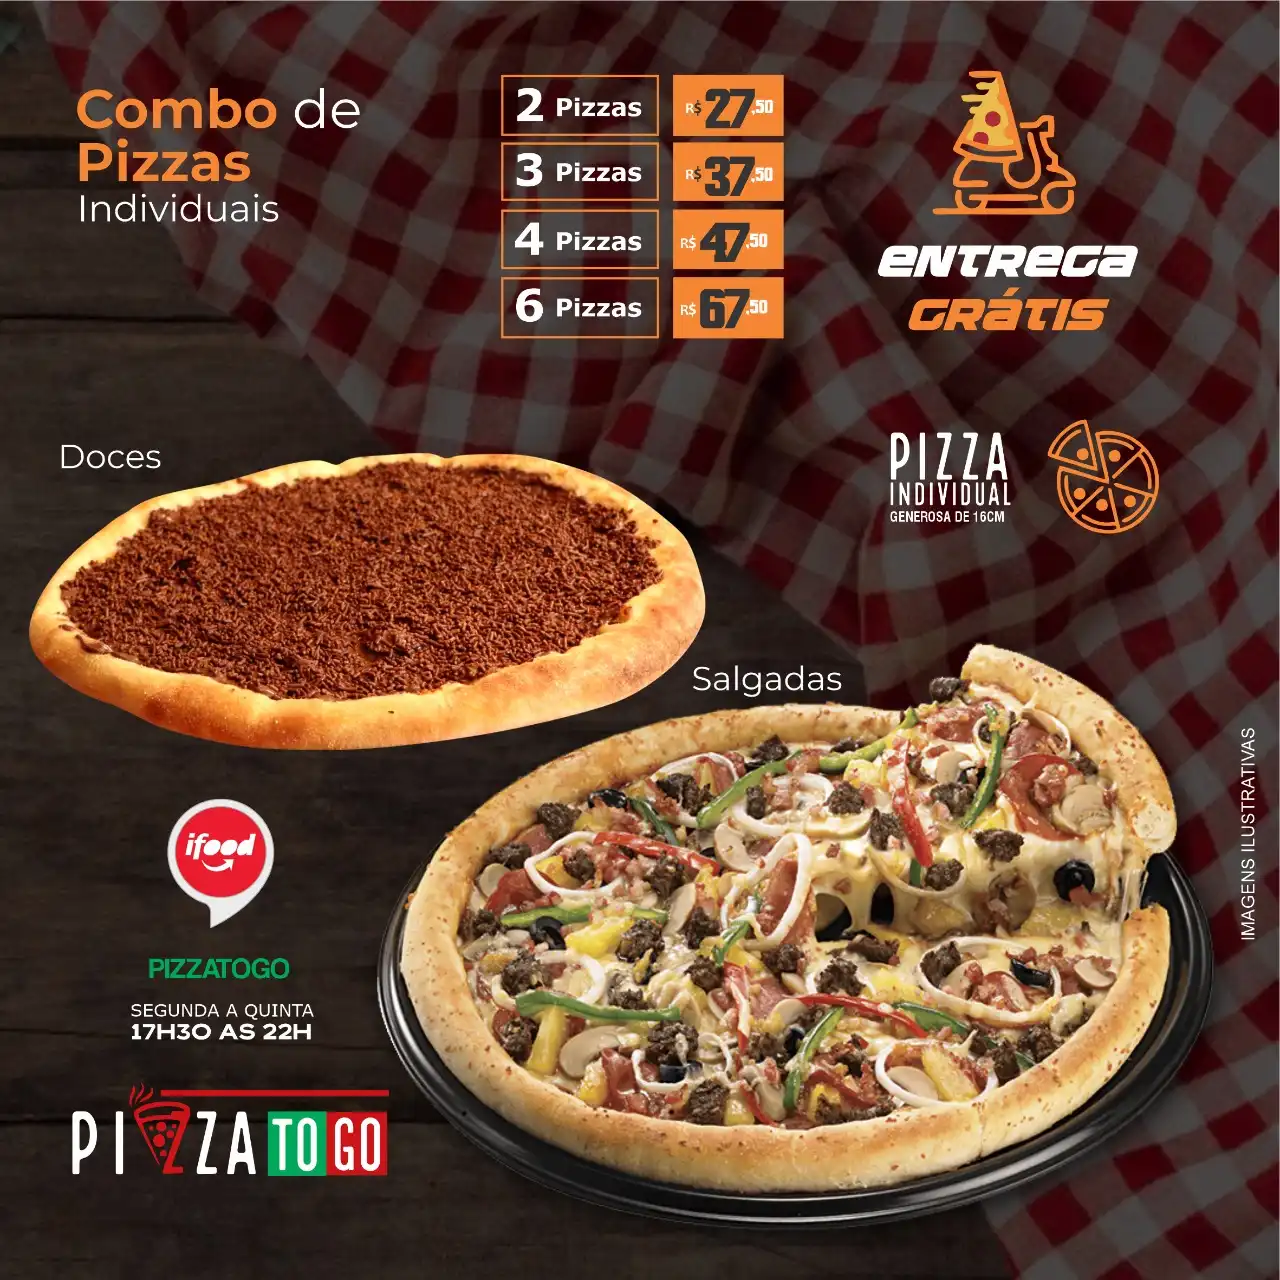 
Propaganda de Post Combos de Pizzas Individuais Doces e Salgadas via Ifood



